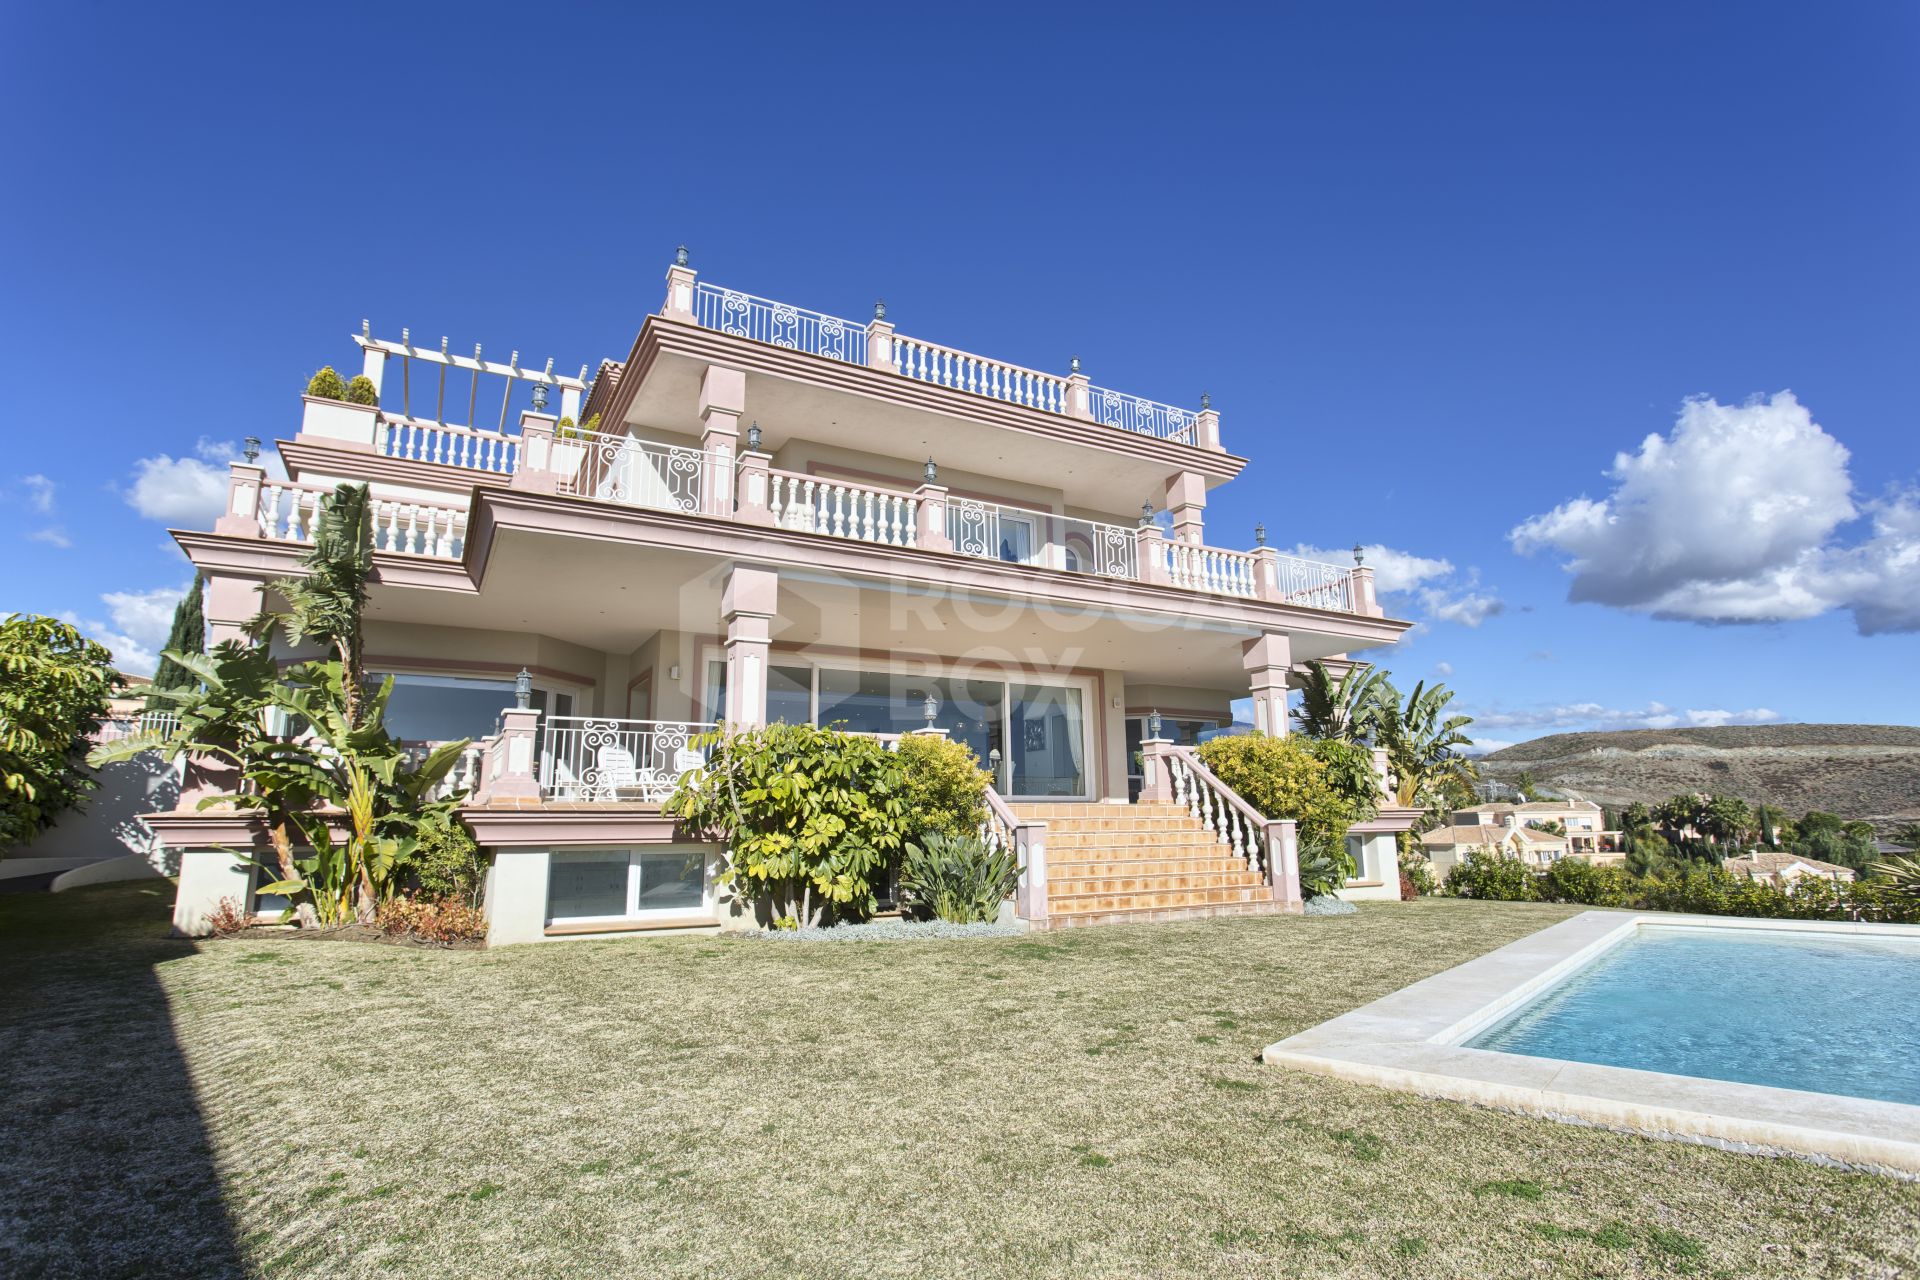 8 Bed villa in Los Flamingos Golf Resort